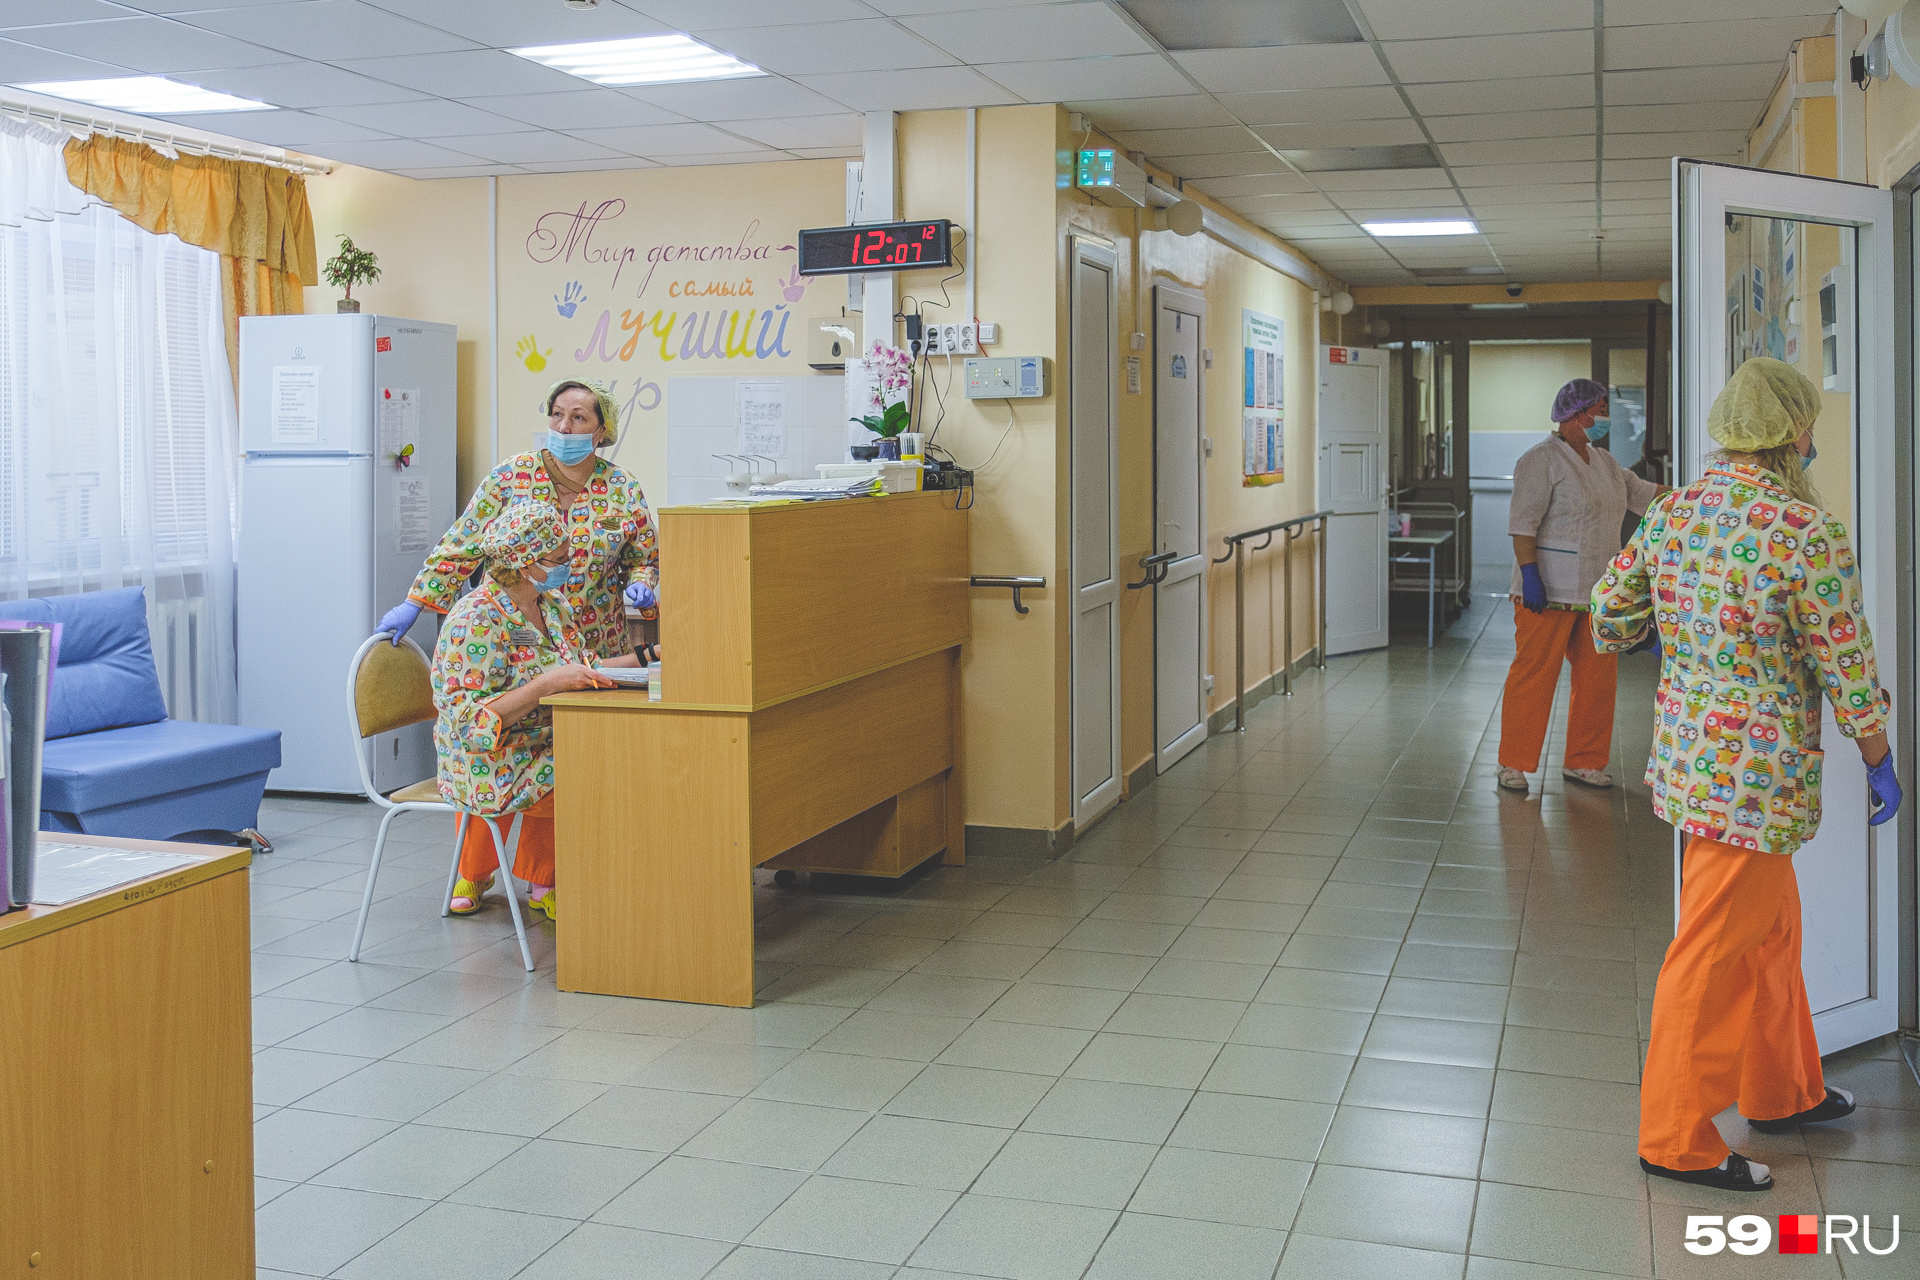 Врачи и медсестры в хосписе носят цветные костюмы